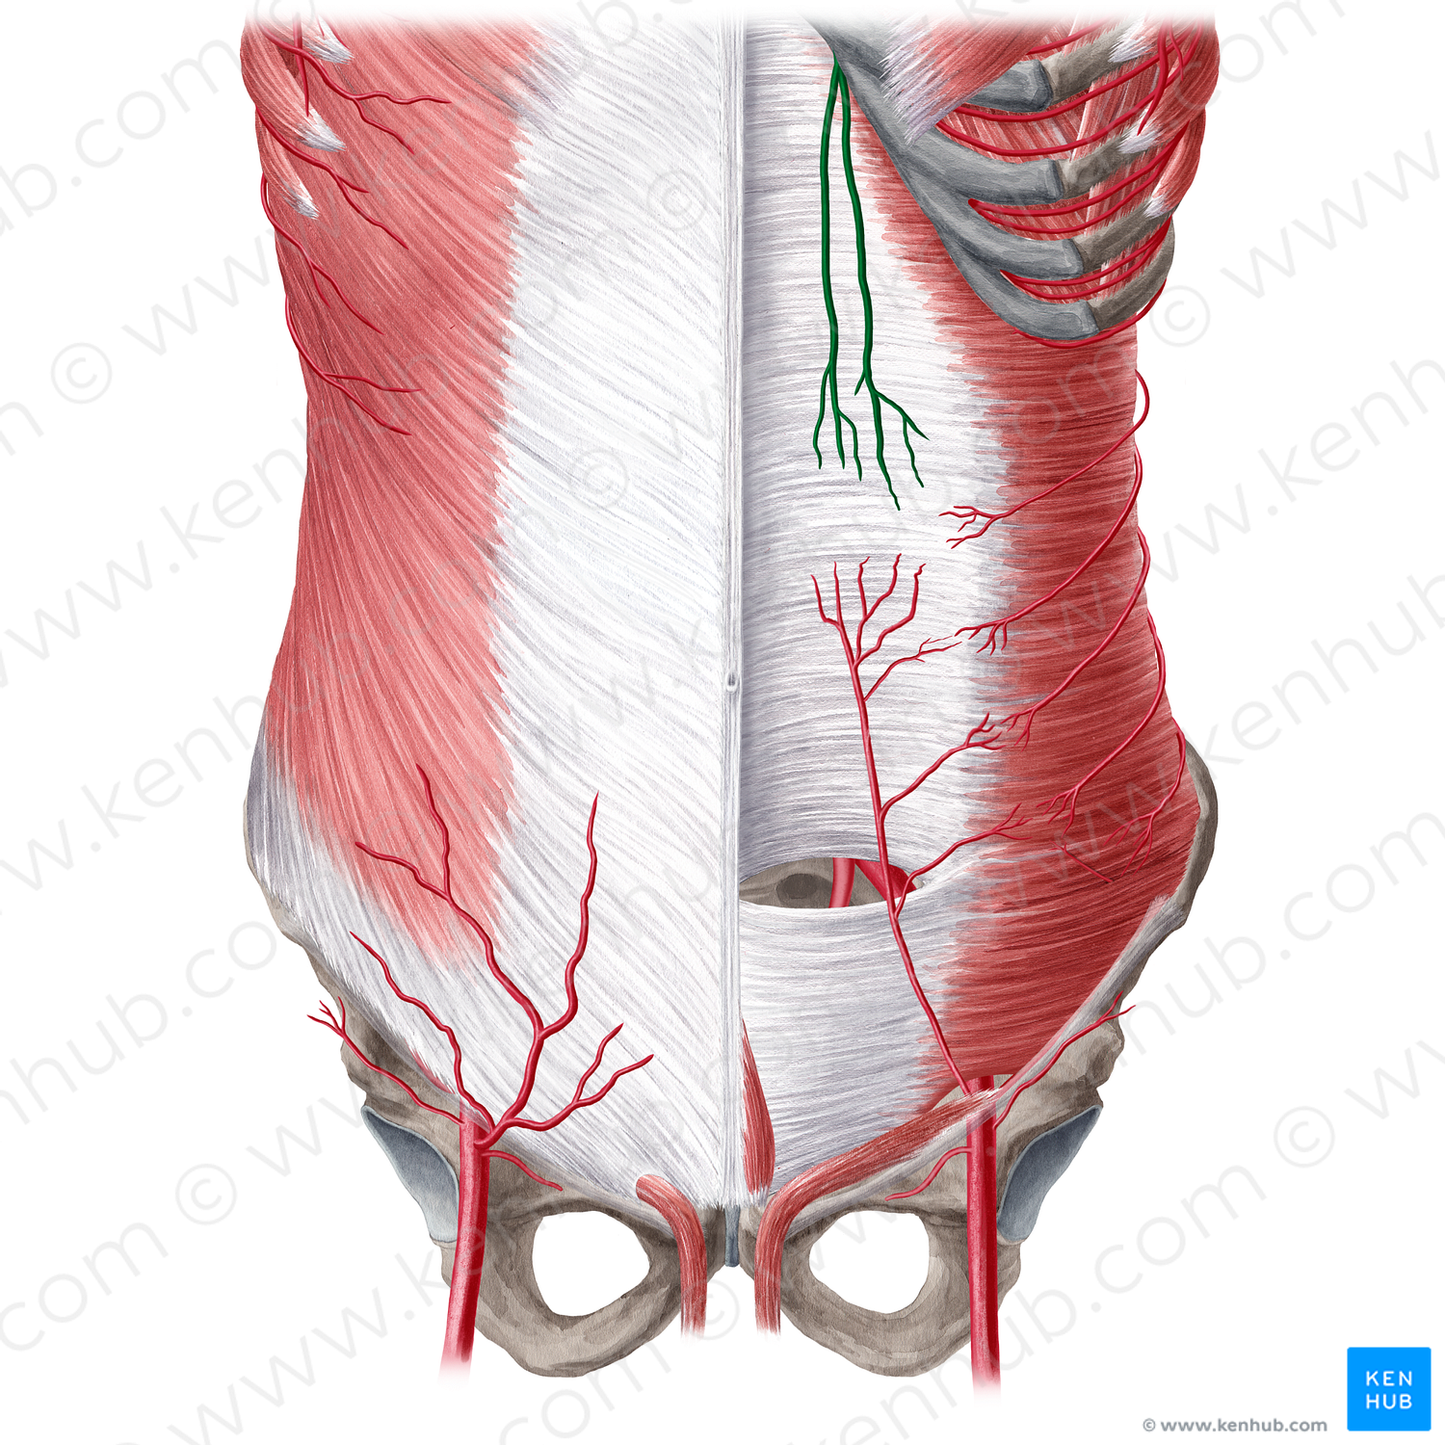 Superior epigastric artery (#1198)